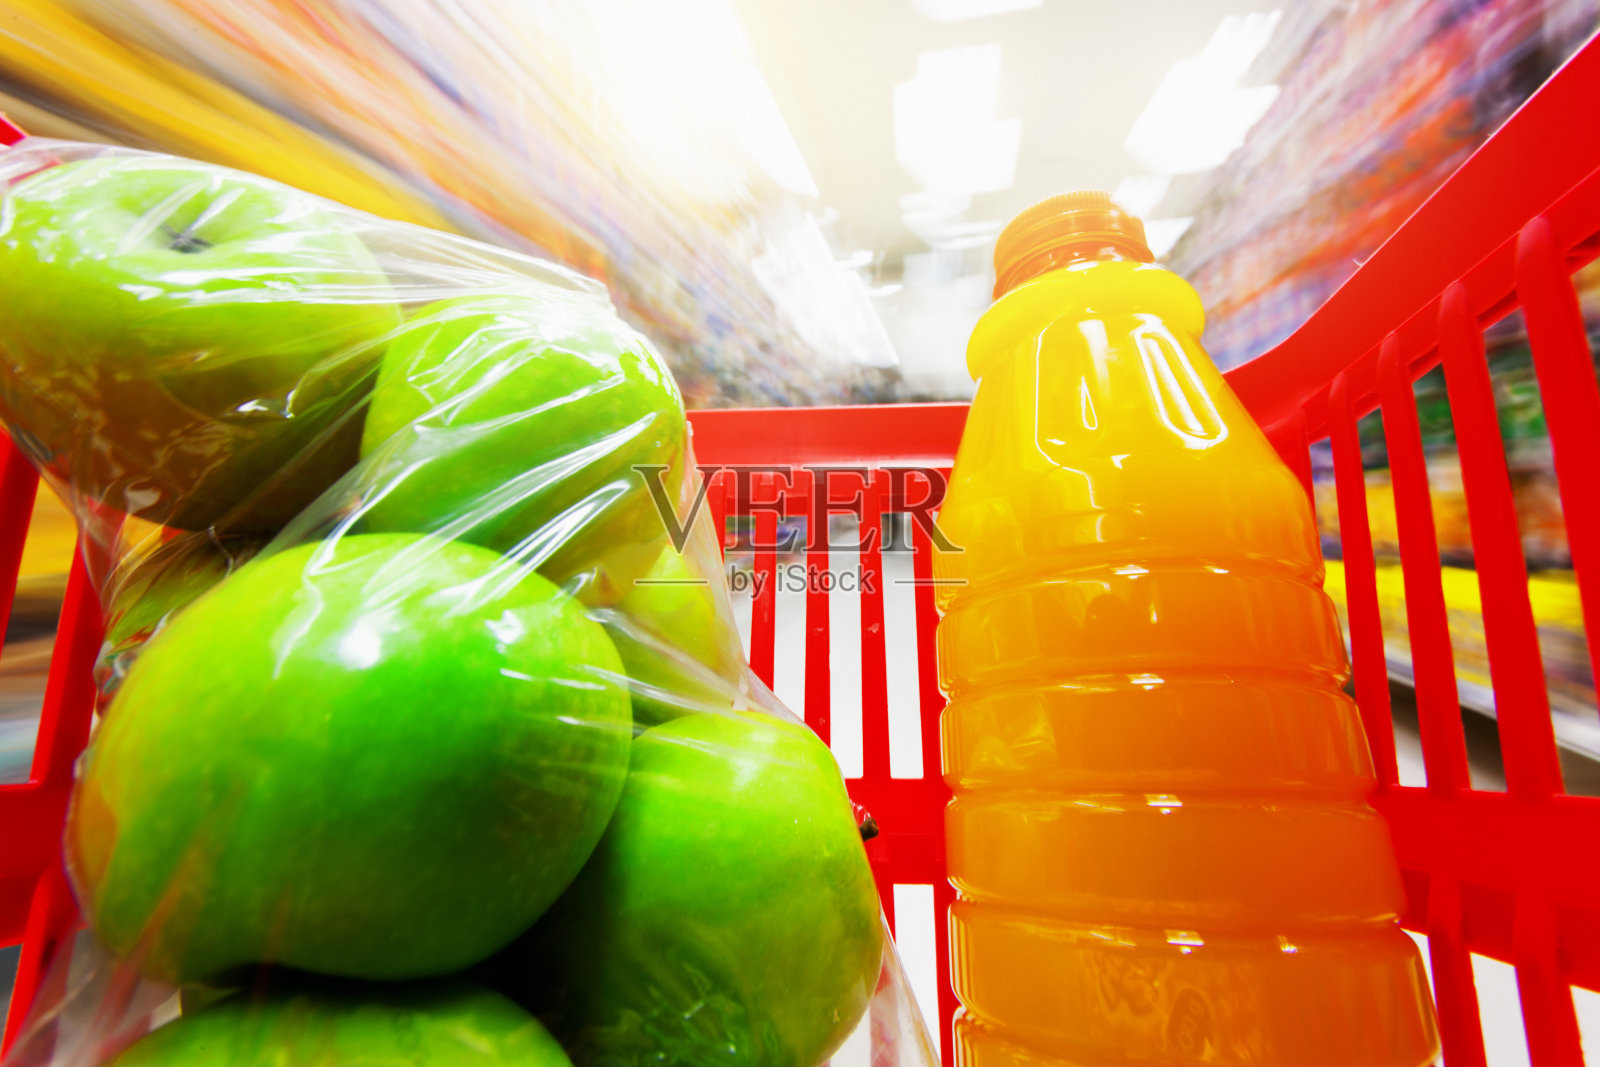 塑料包装的苹果和橙汁在购物车的特写照片摄影图片